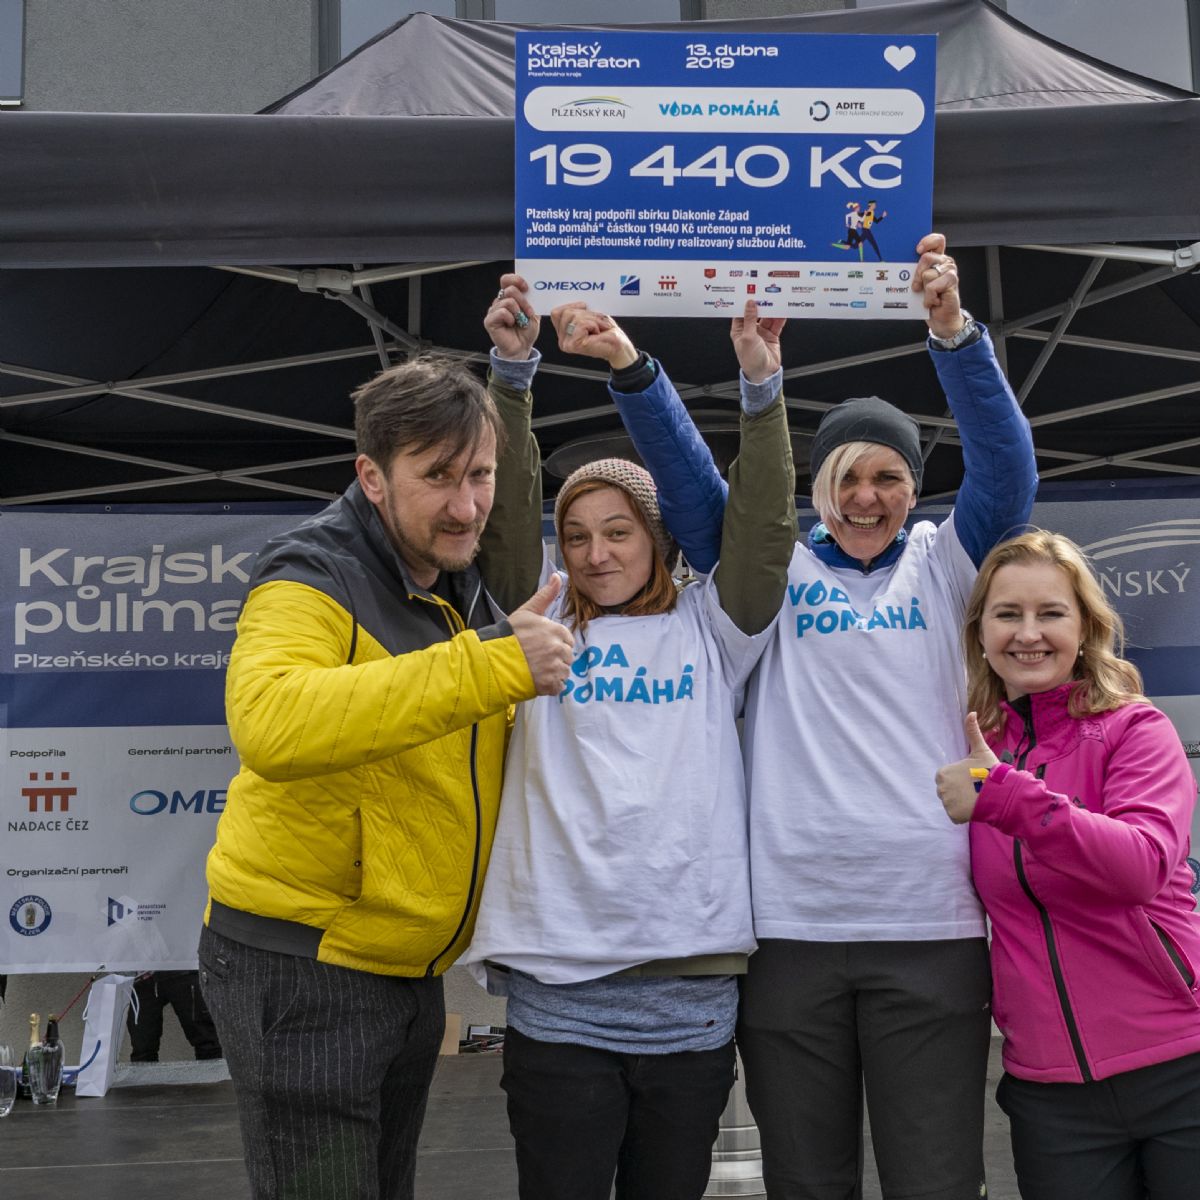 Krajský půlmaraton podpořil projekt Voda pomáhá i přes zrušení závodu